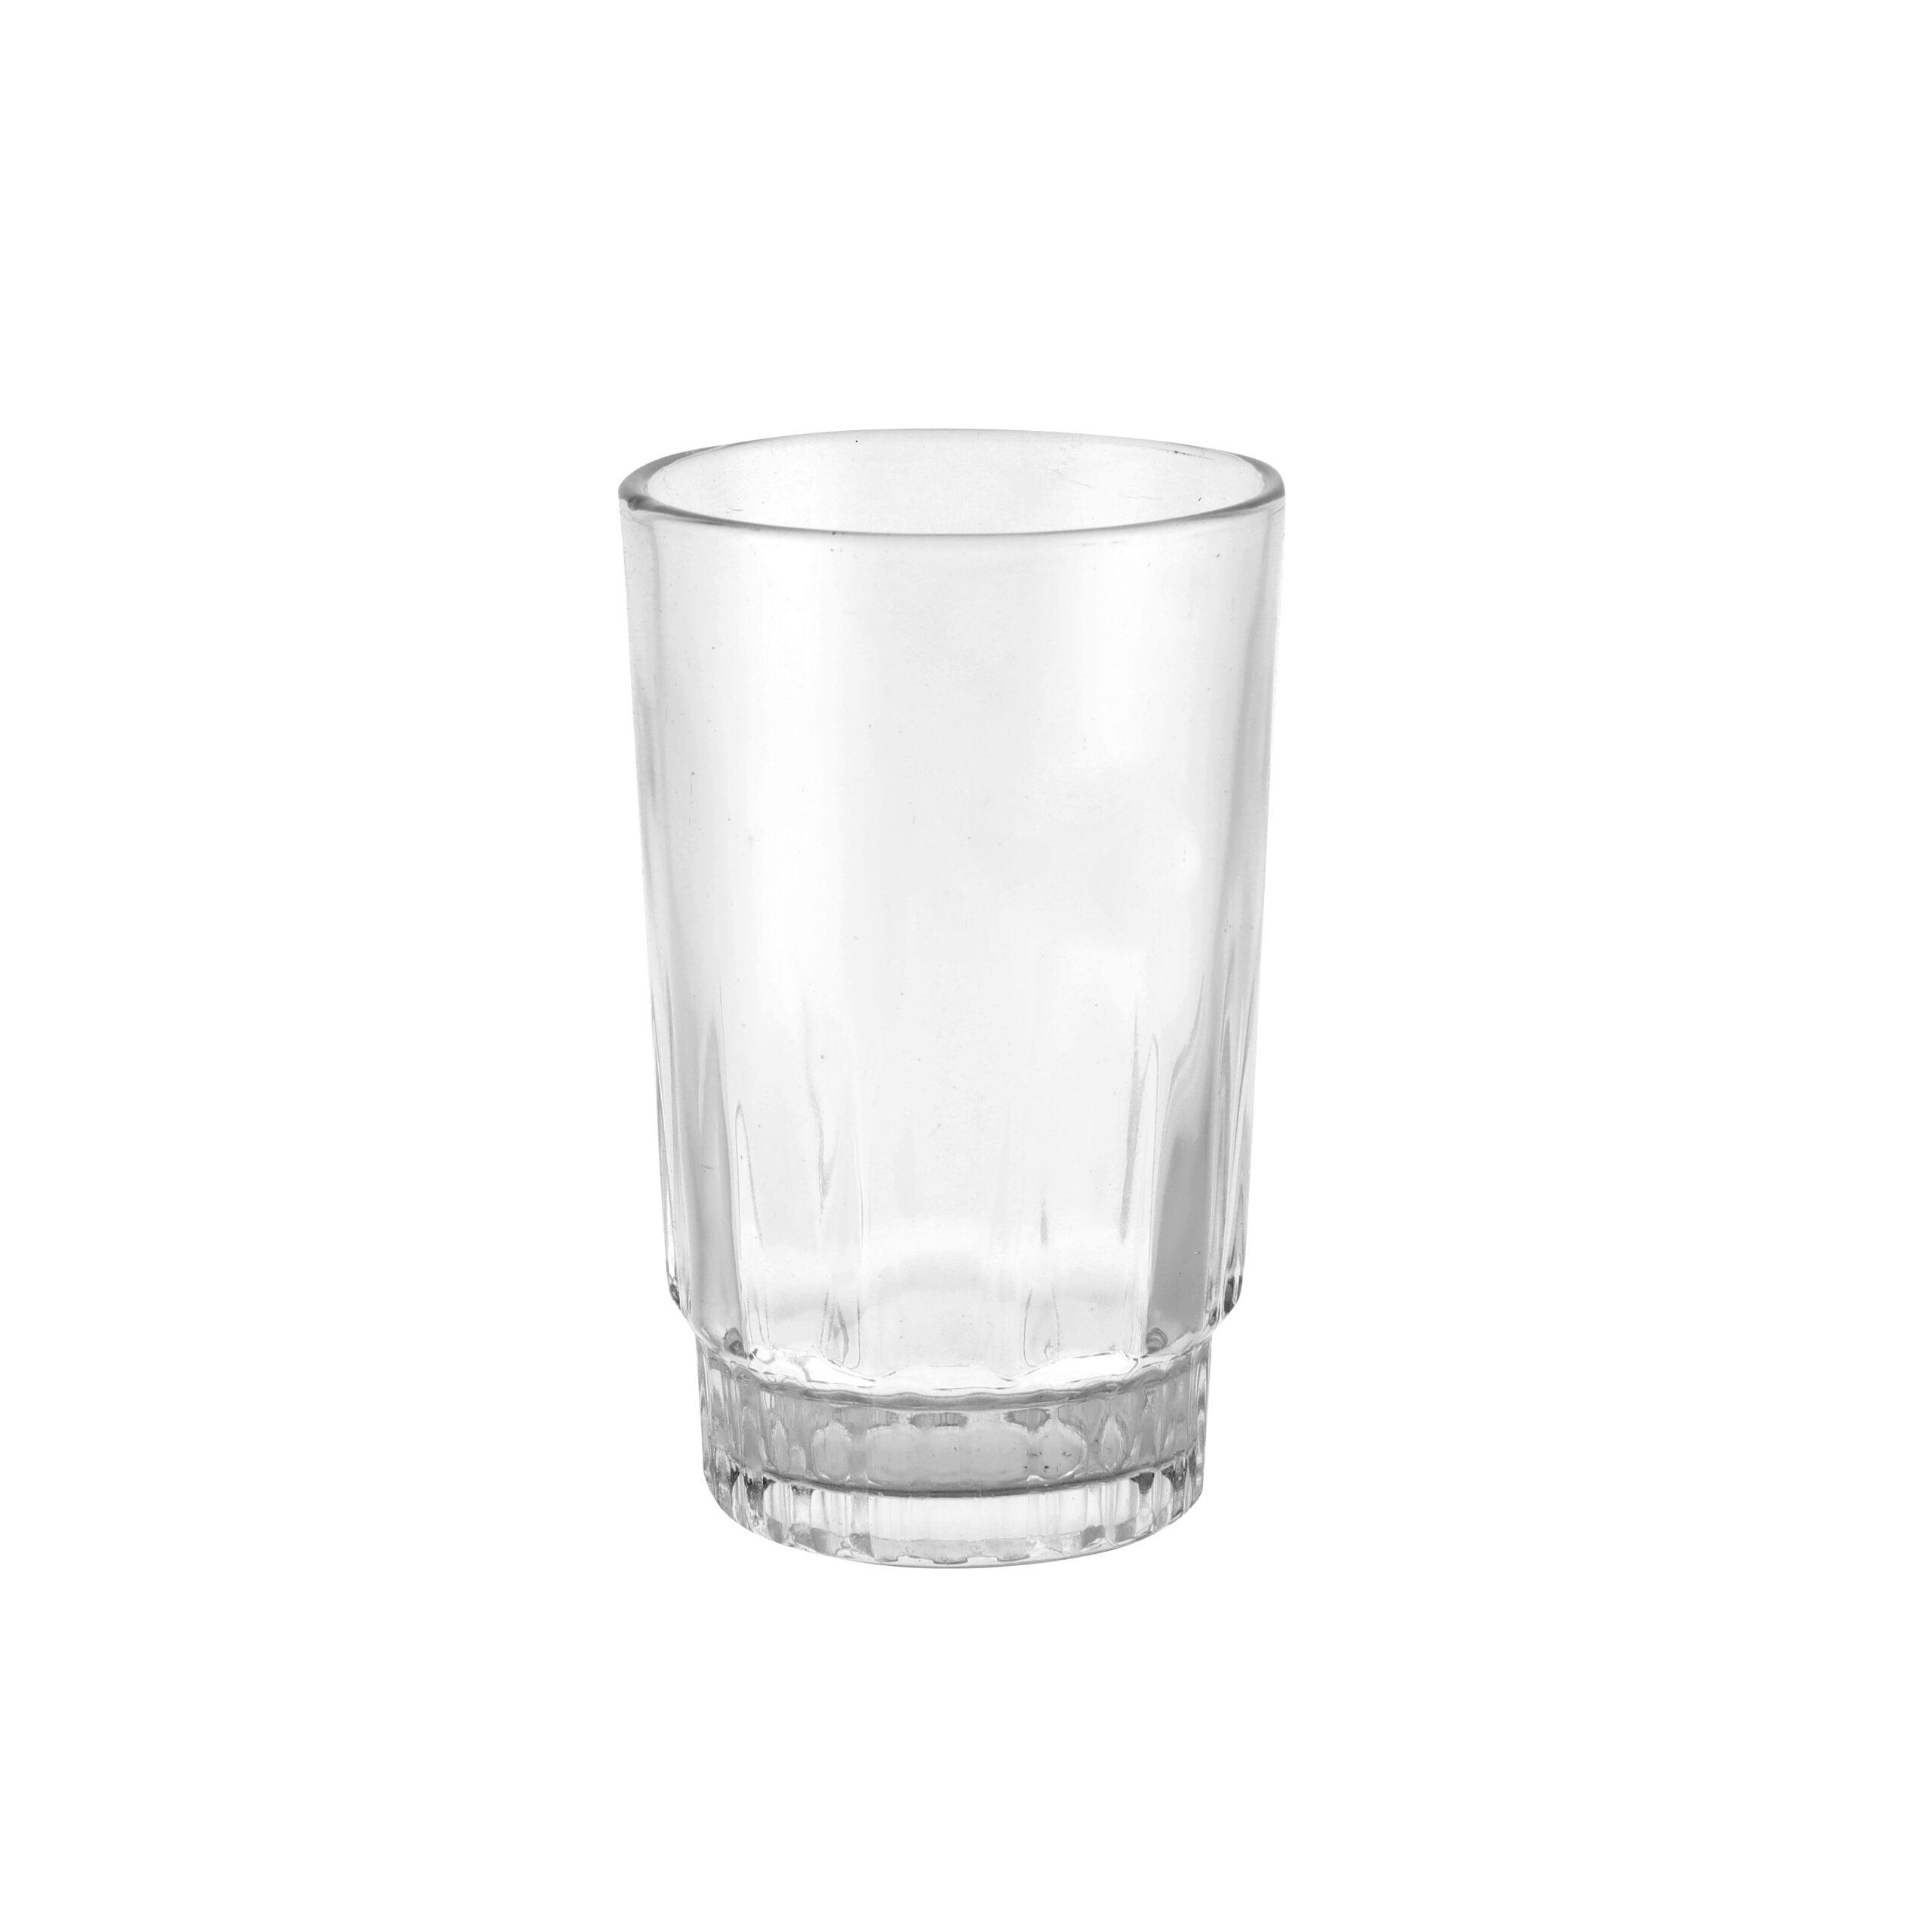 طقم كاسات عصير زجاجي 6 قطع 240 مل Royalford - 6Pcs 240Ml Glass Tumbler - Portable Water Cup Drinking Glass - cG9zdDo0MDM0ODA=